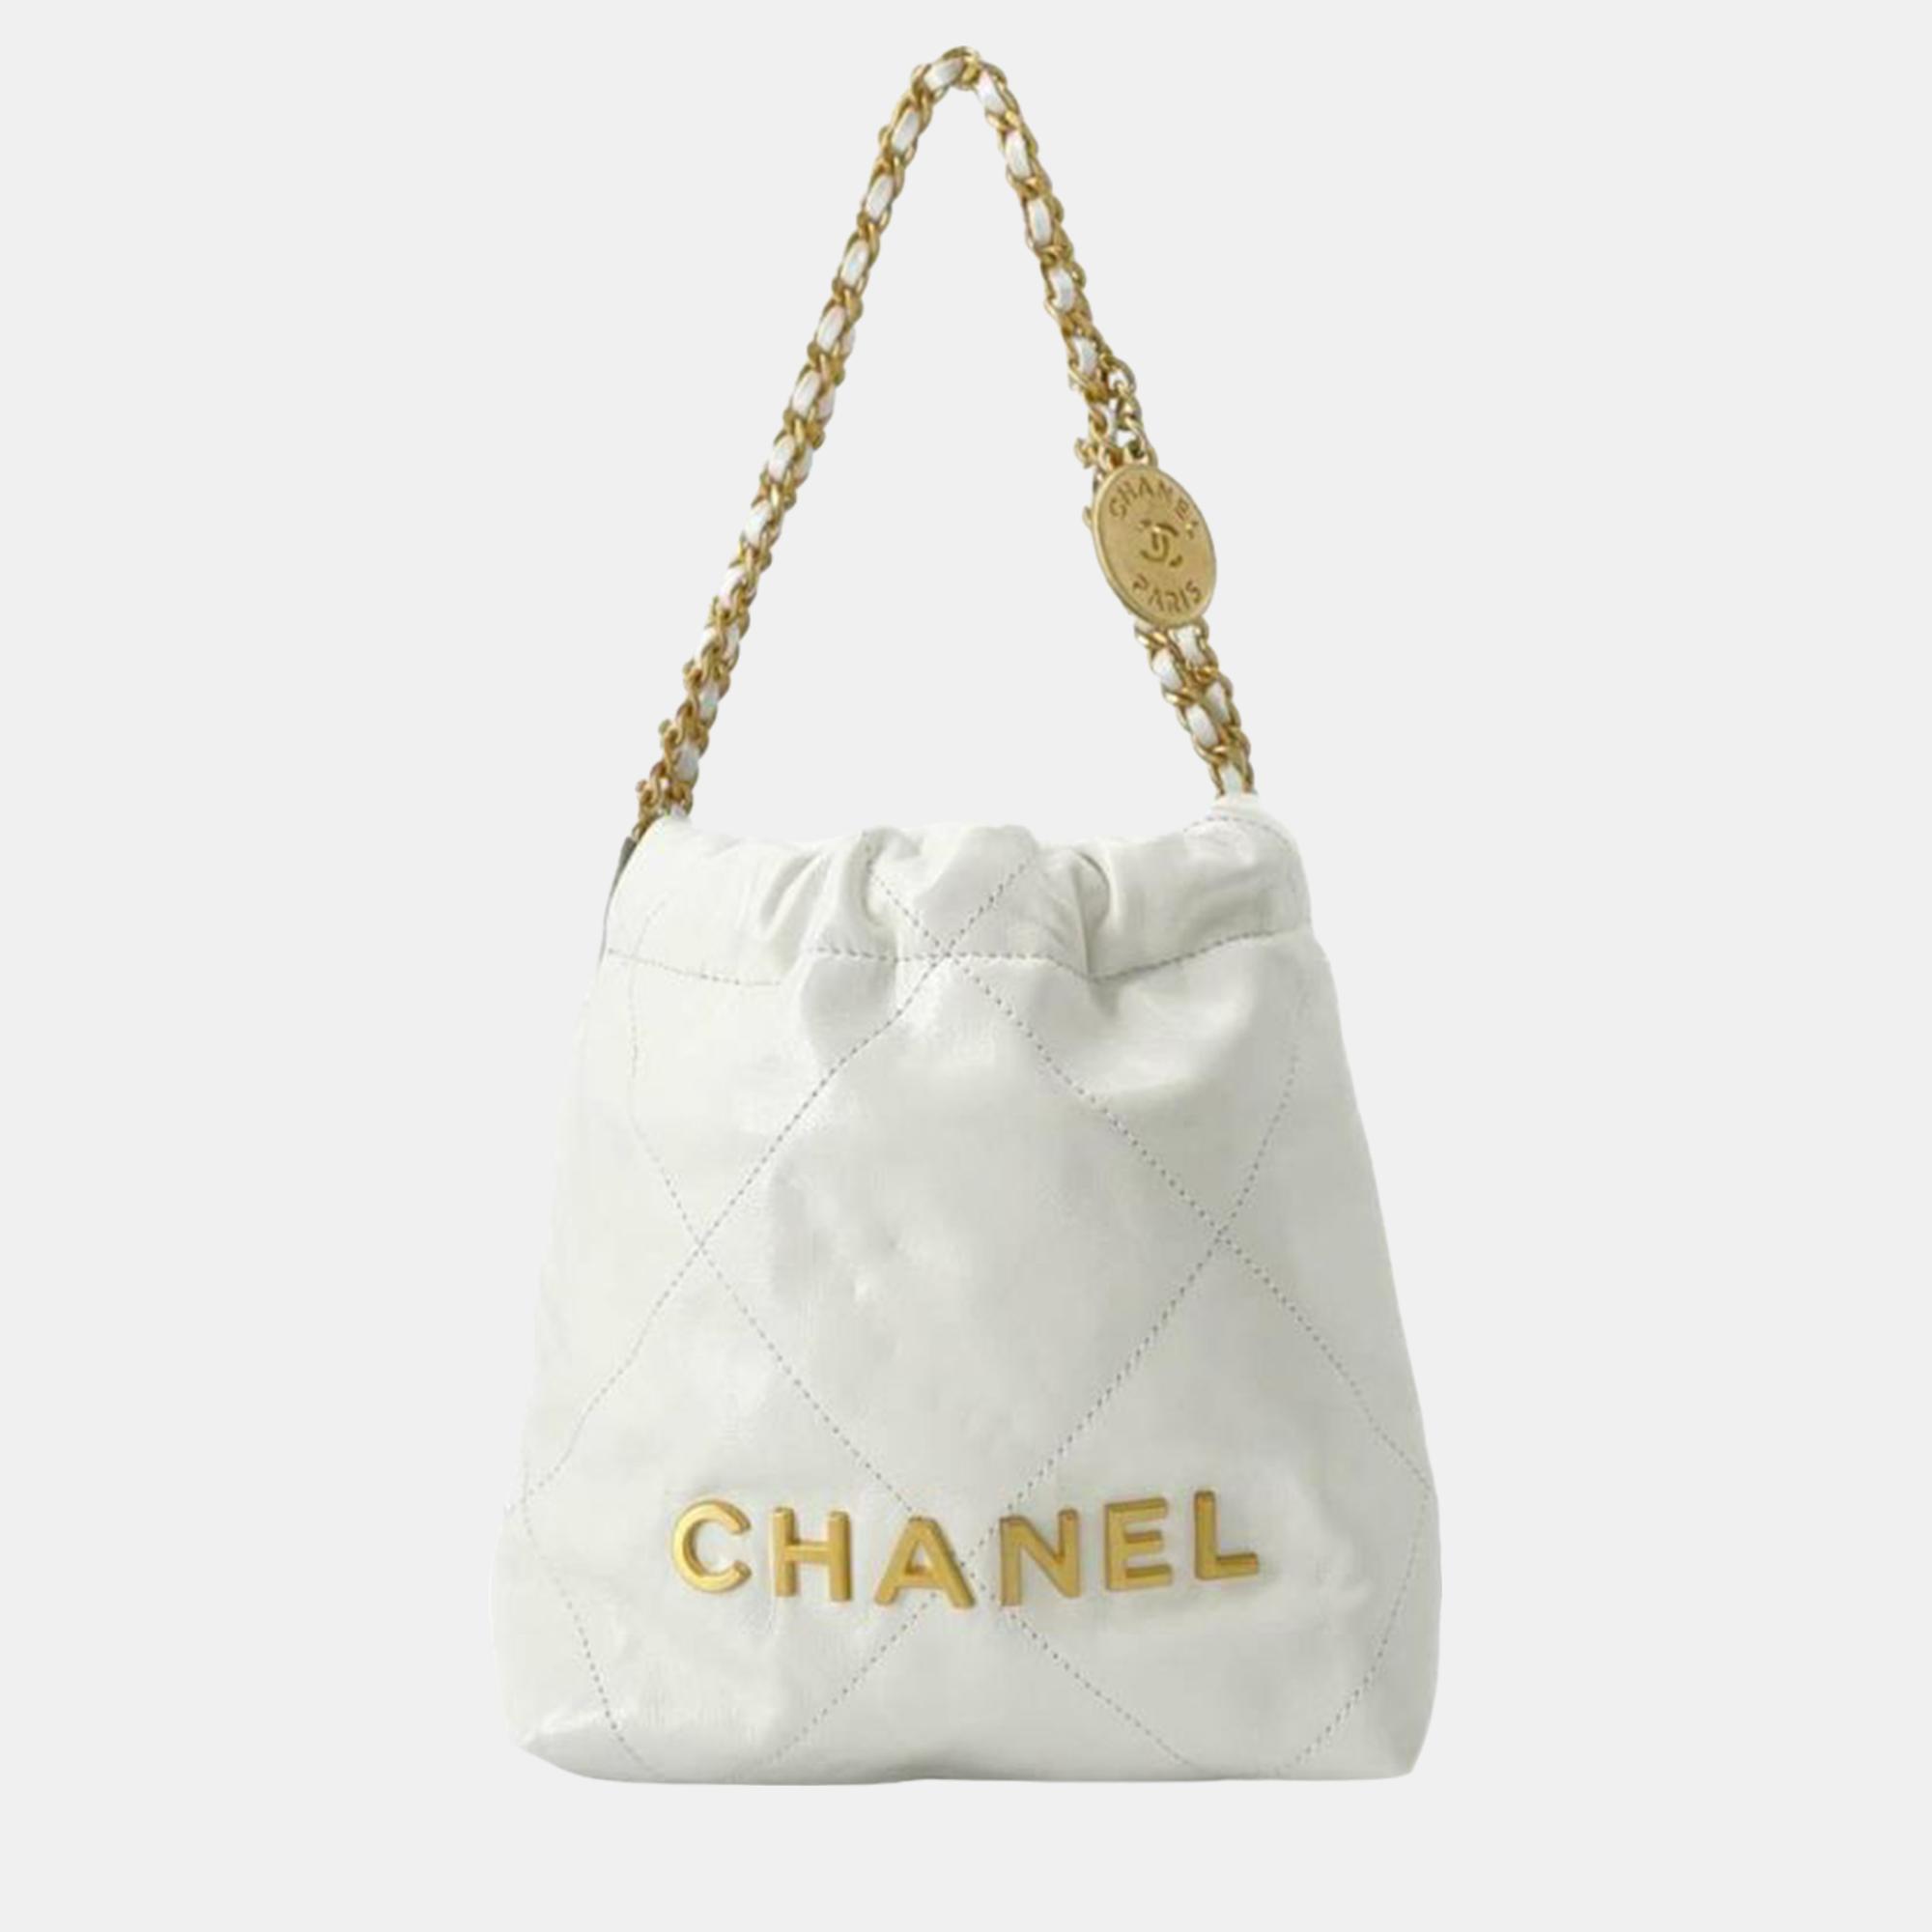 Chanel white calfskin mini 22 satchel